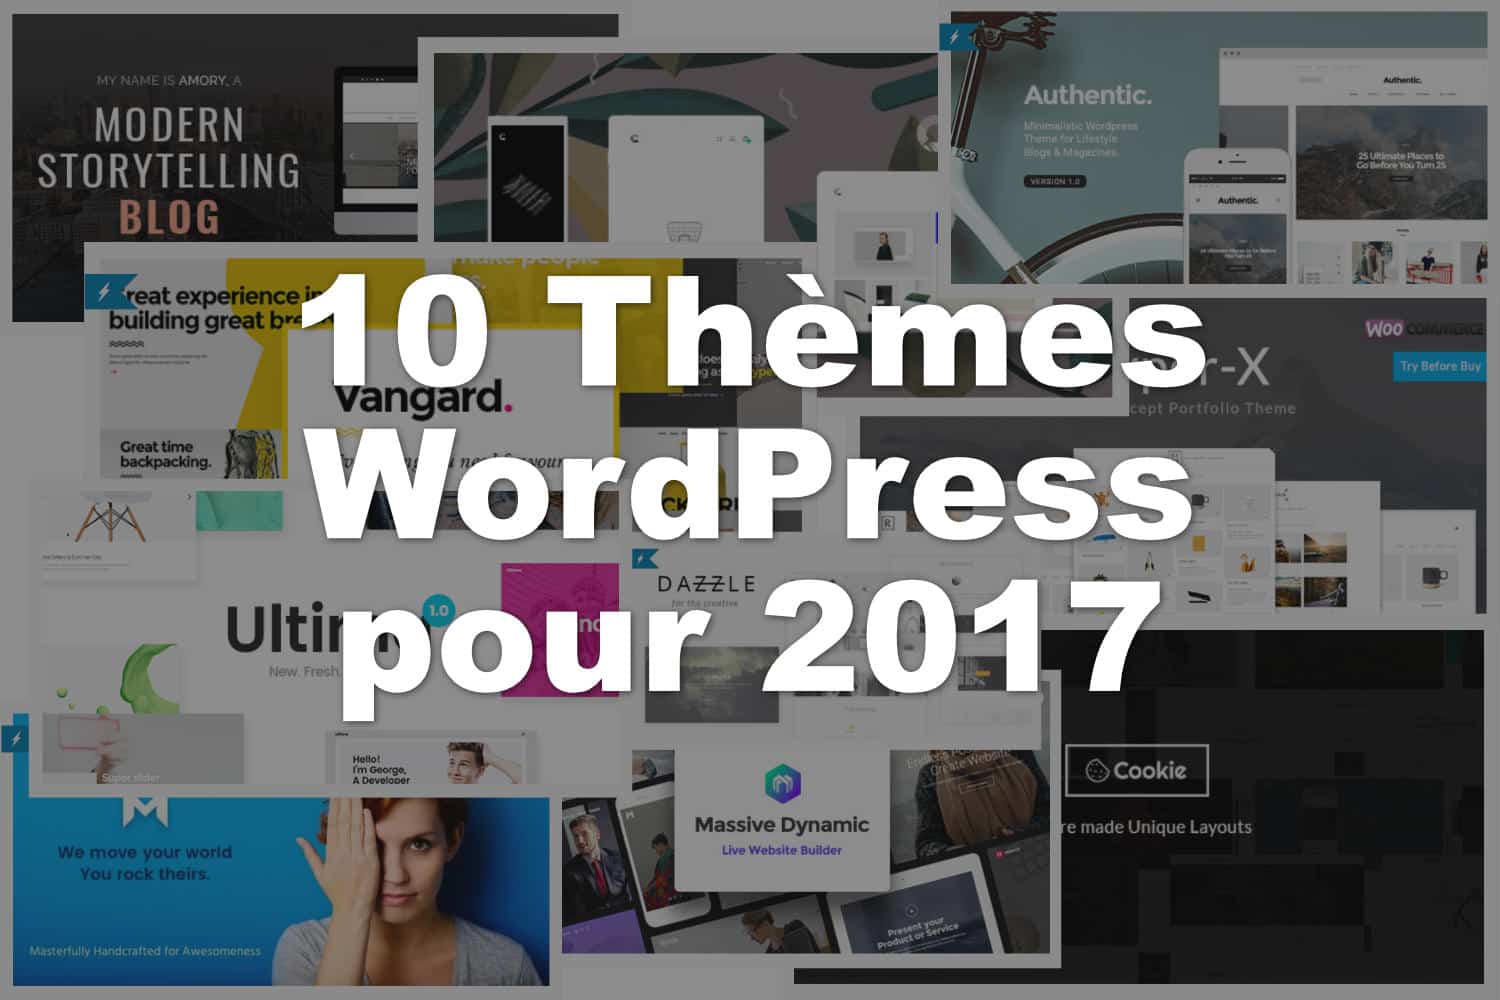 Thèmes WordPress pour 2017